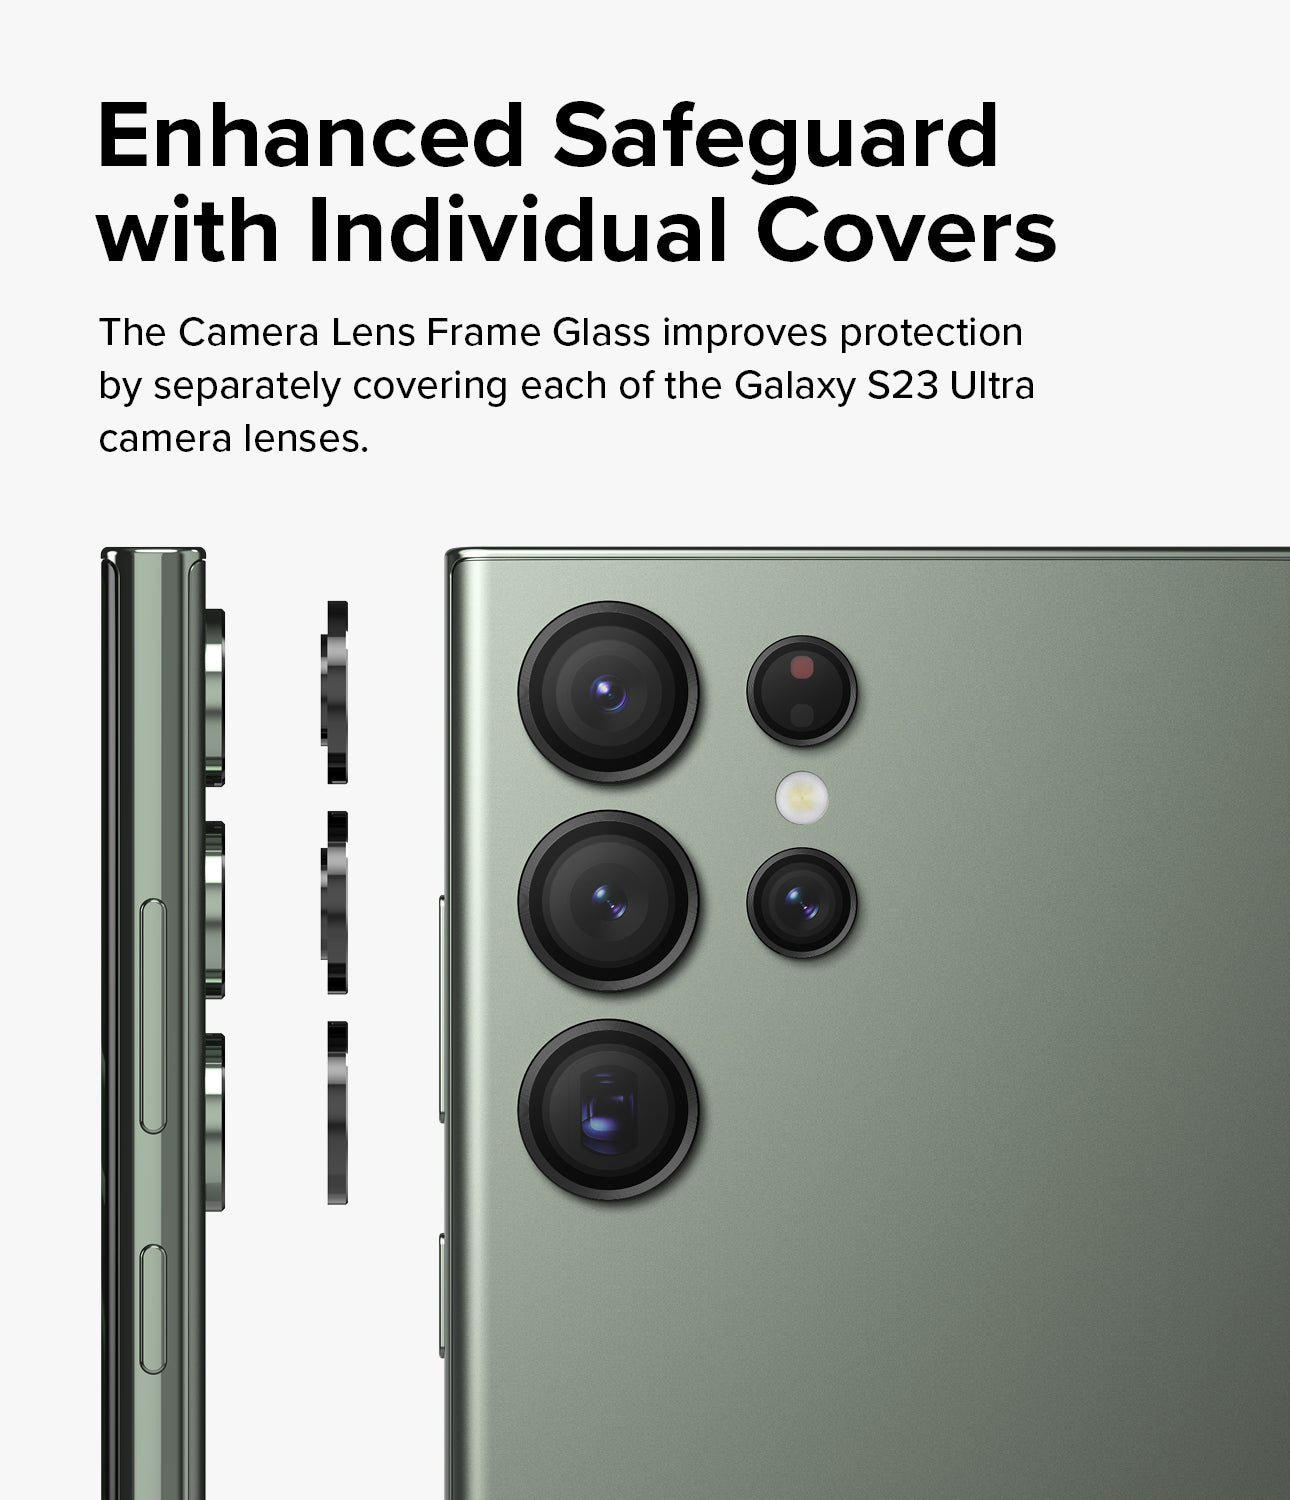 Galaxy S23 / S23 Plus Camera Lens Protector | Camera Lens Frame Glass